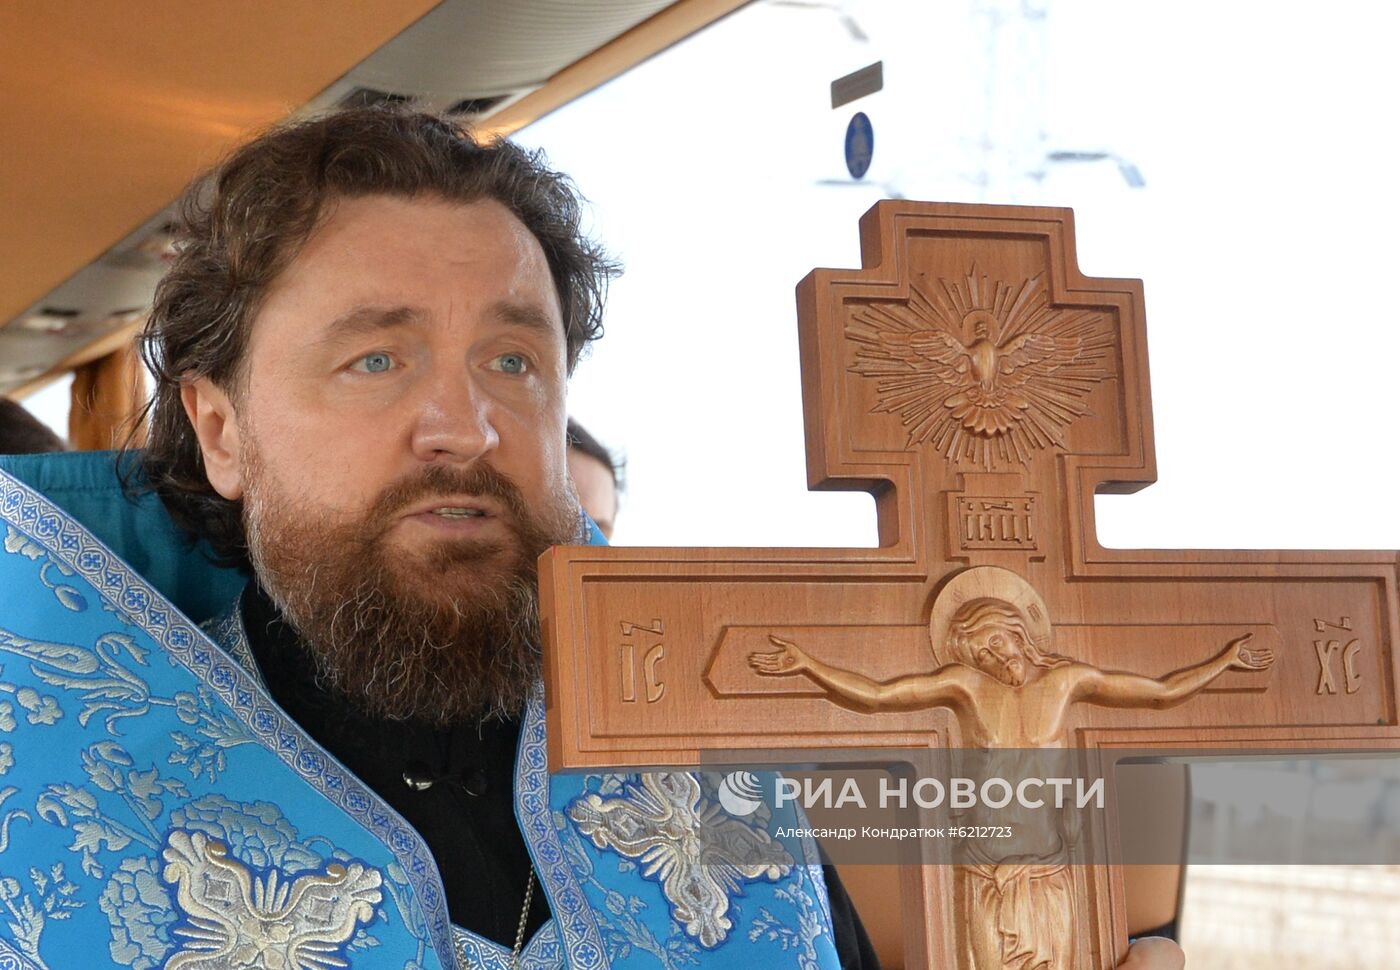 Соборная молитва жителей городов России об избавлении от коронавируса